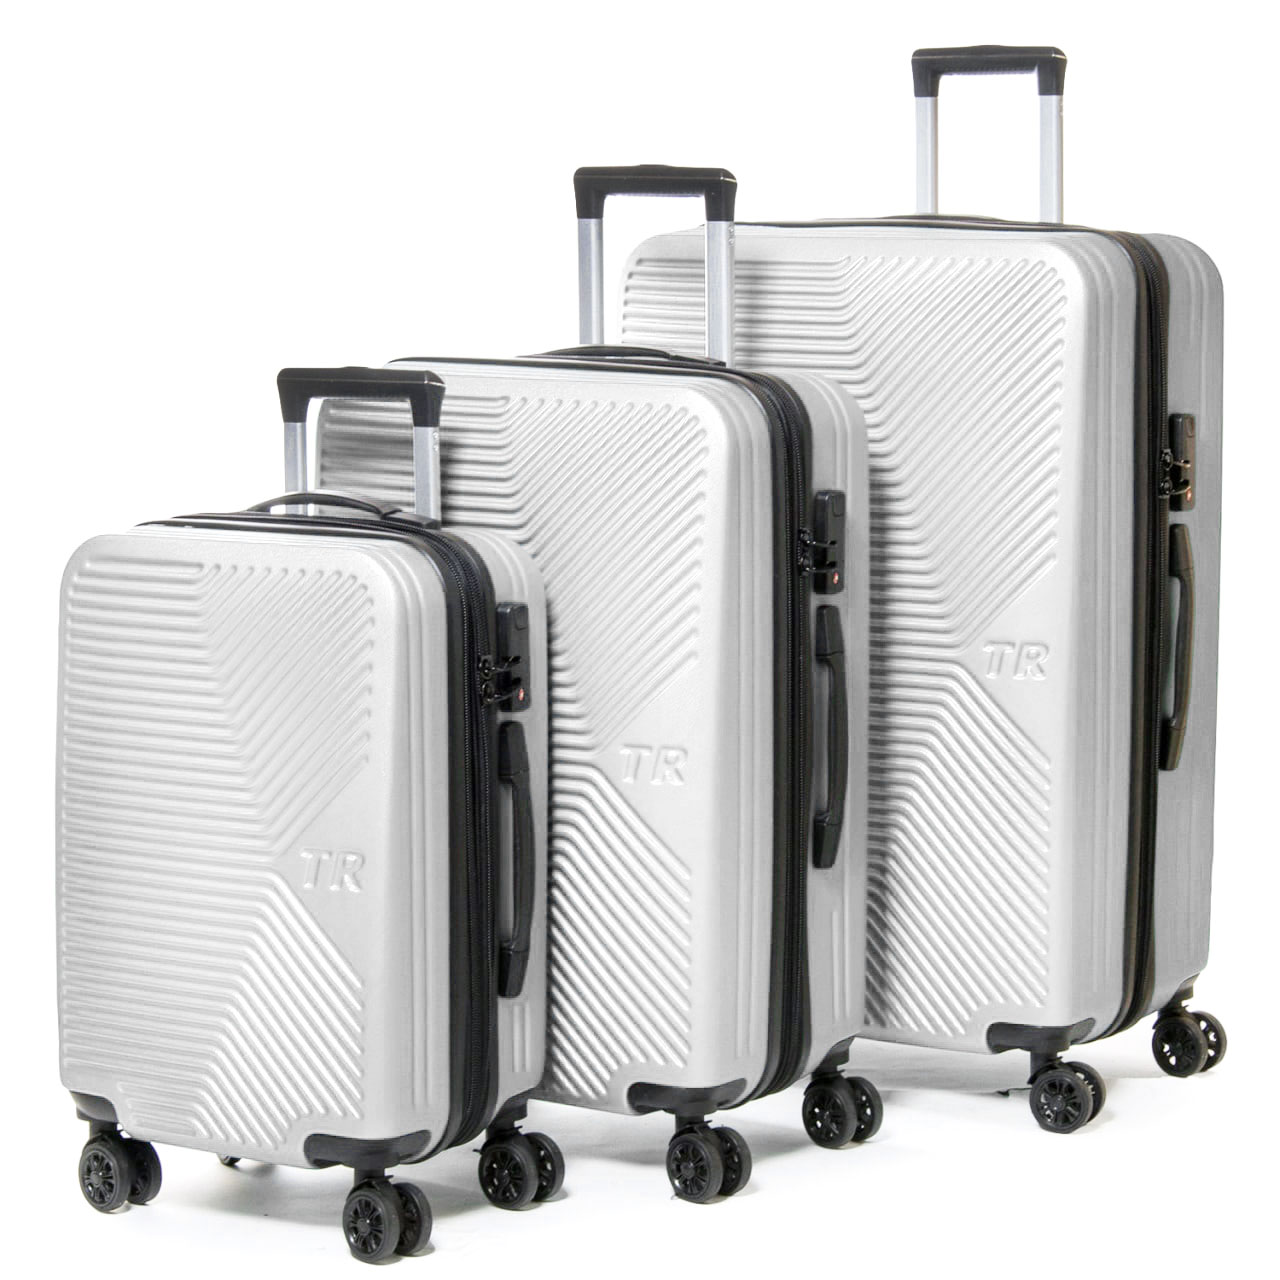 Белый большой дорожный чемодан комплект 3 в 1 804 white